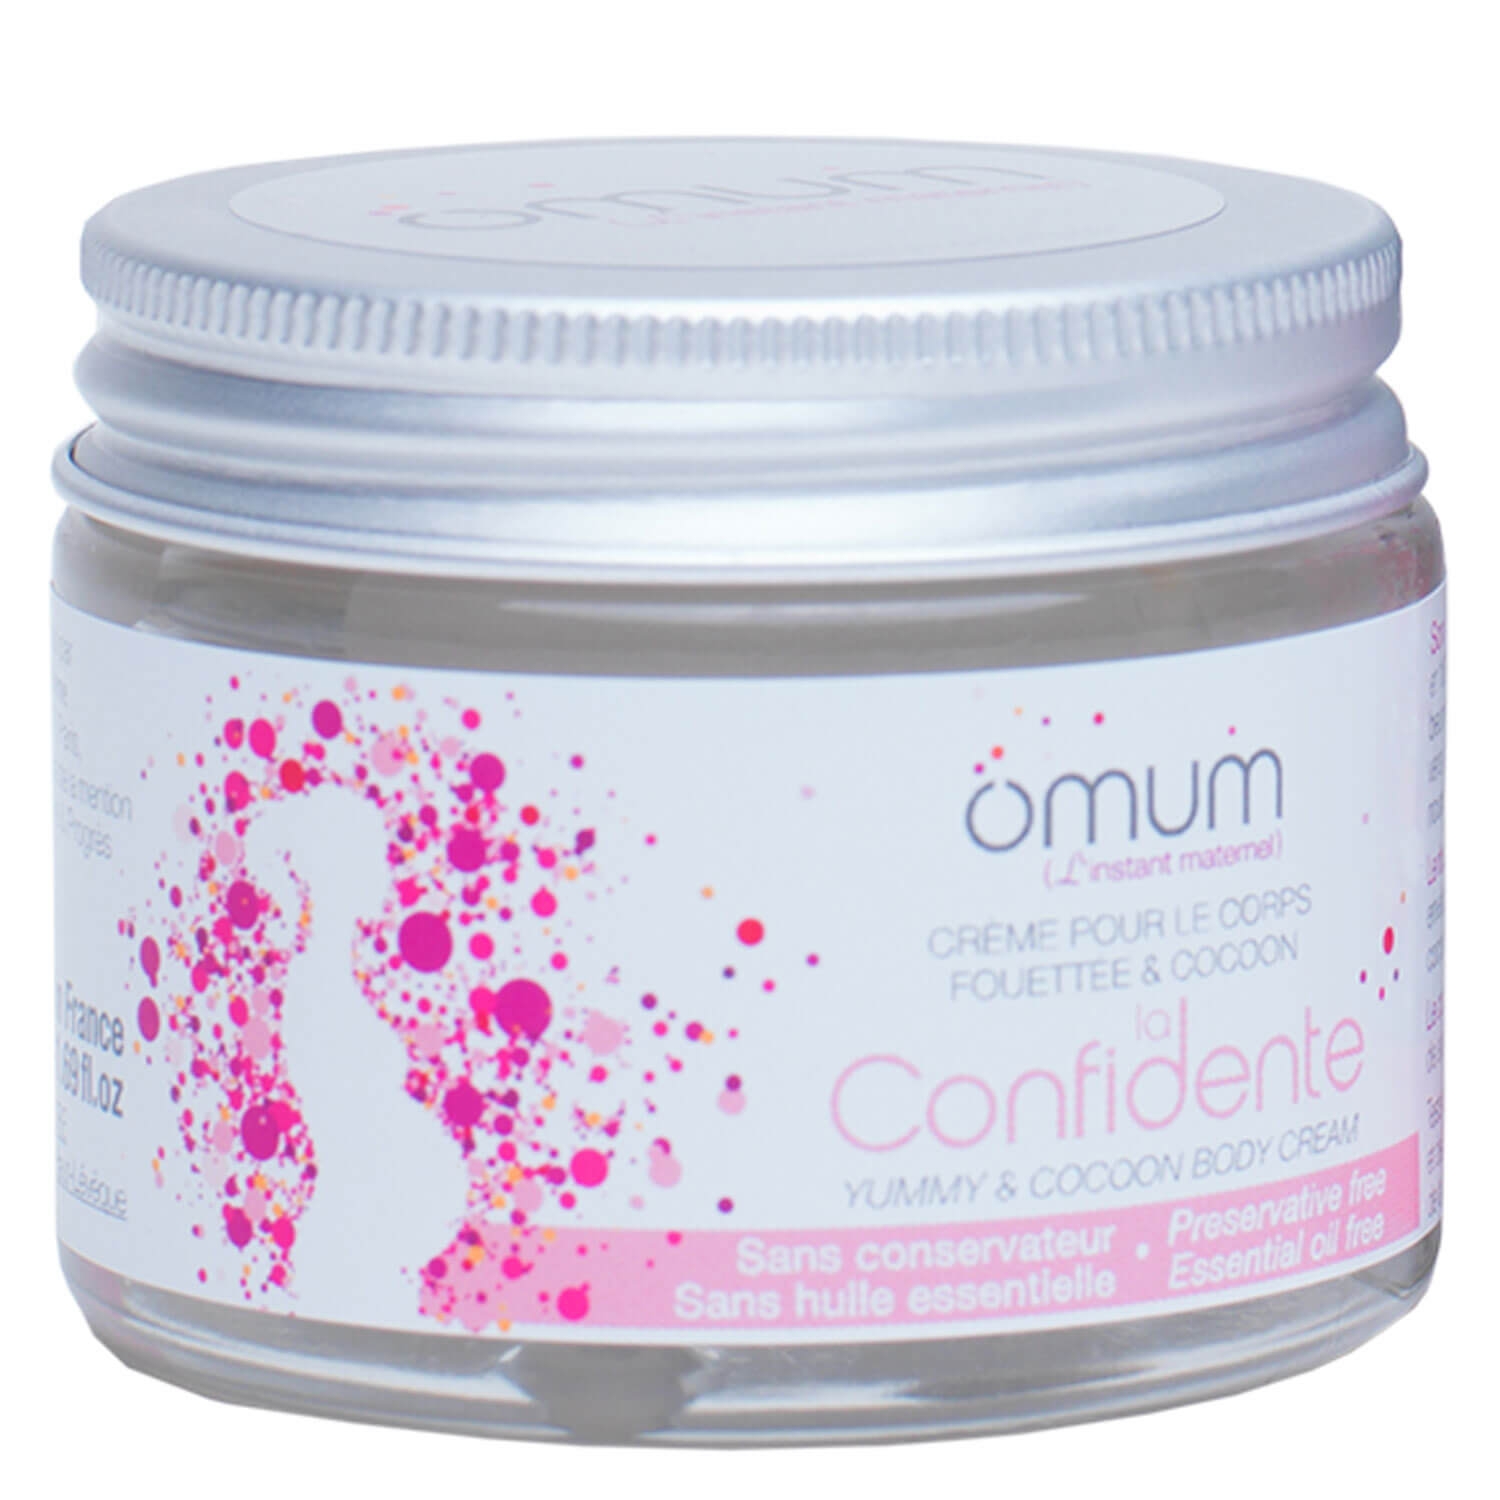 Produktbild von omum - La Confidente Yummy & Cocoon Body Cream